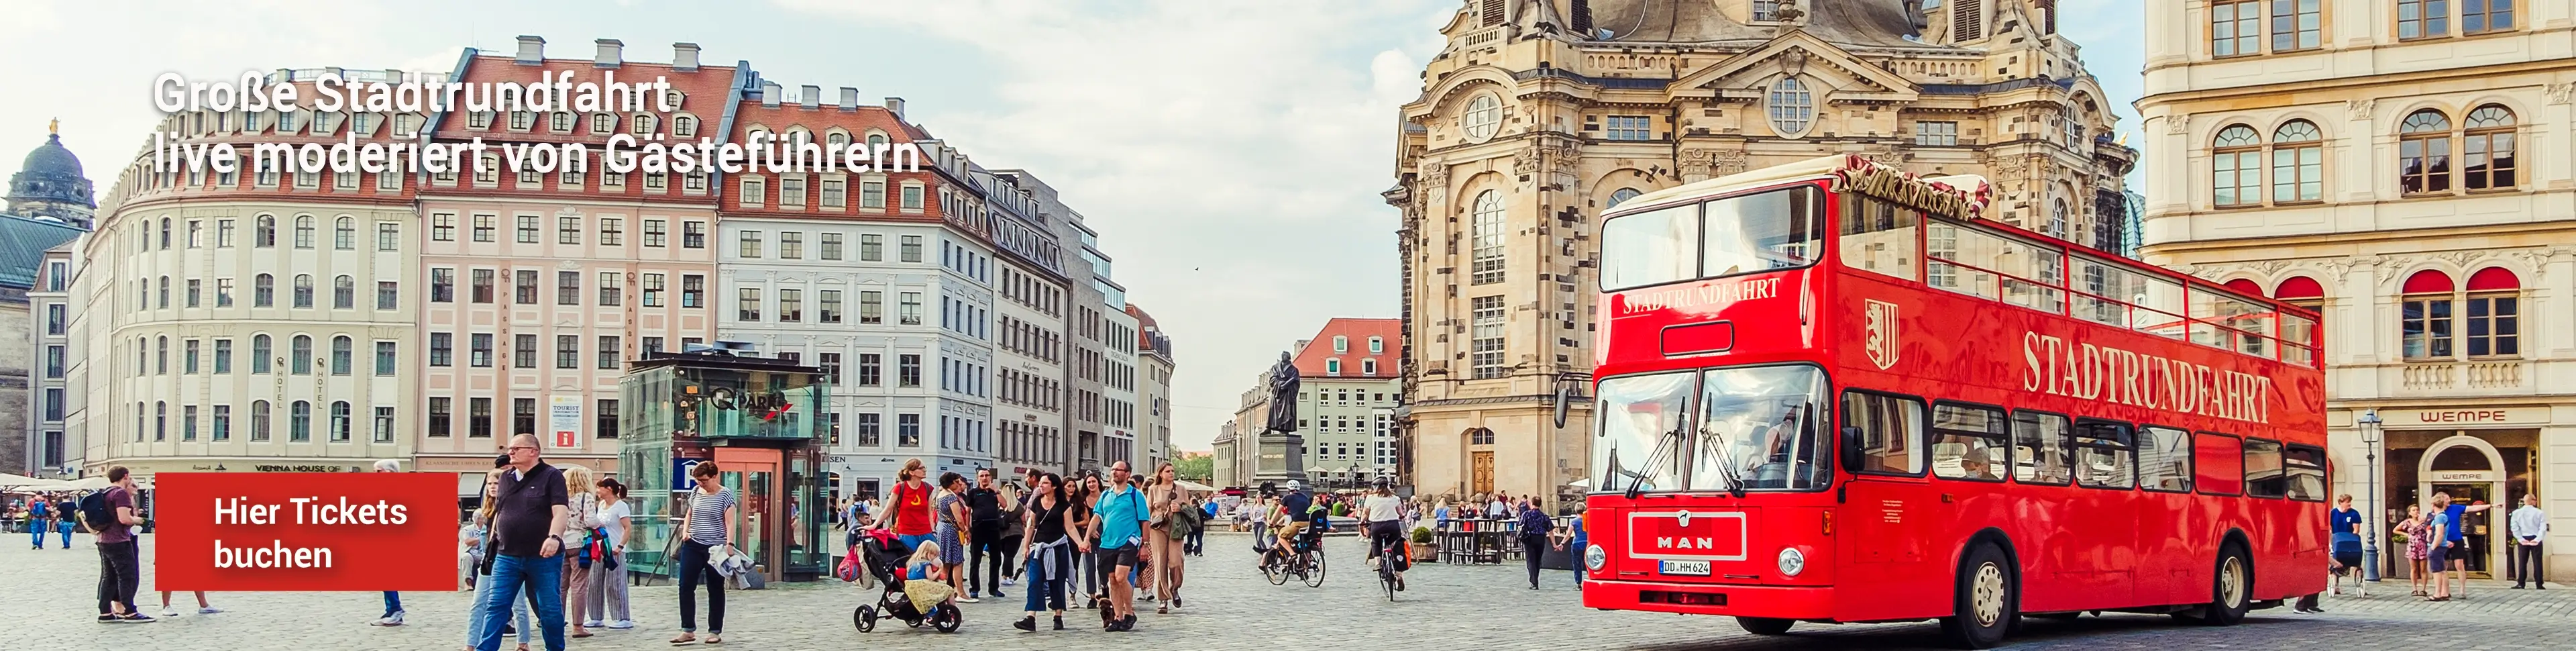 Stadtrundfahrt in Dresden – live moderiert im Roten Doppeldecker